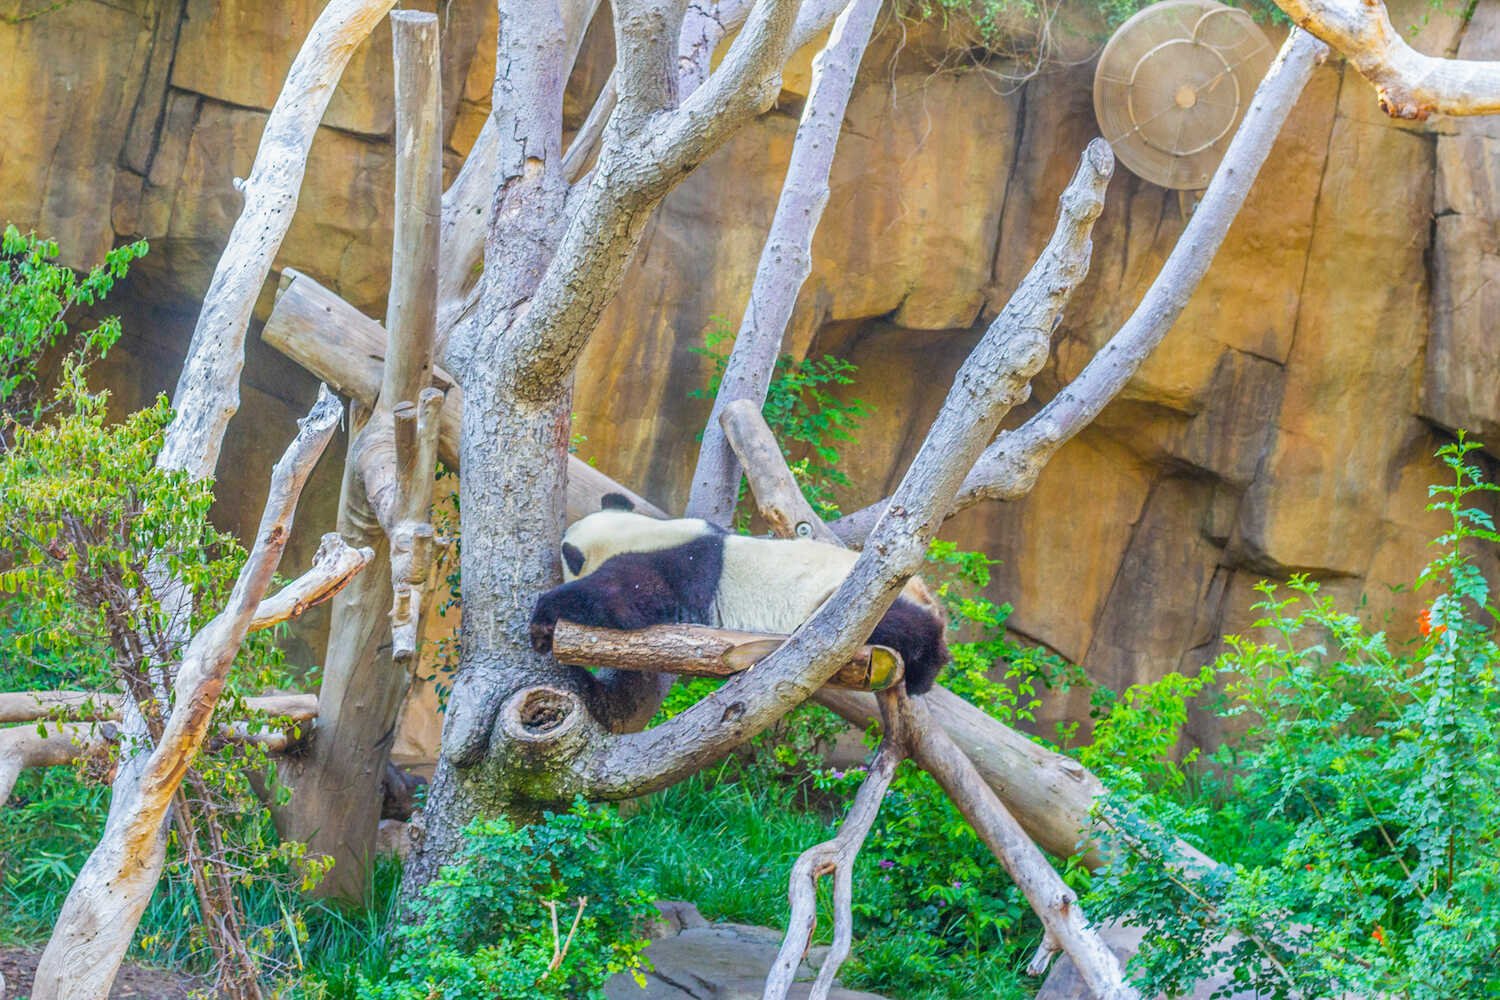 San Diego Zoo vs. Safari Park - Unfortunately the Giant Pandas have left the San Diego Zoo.